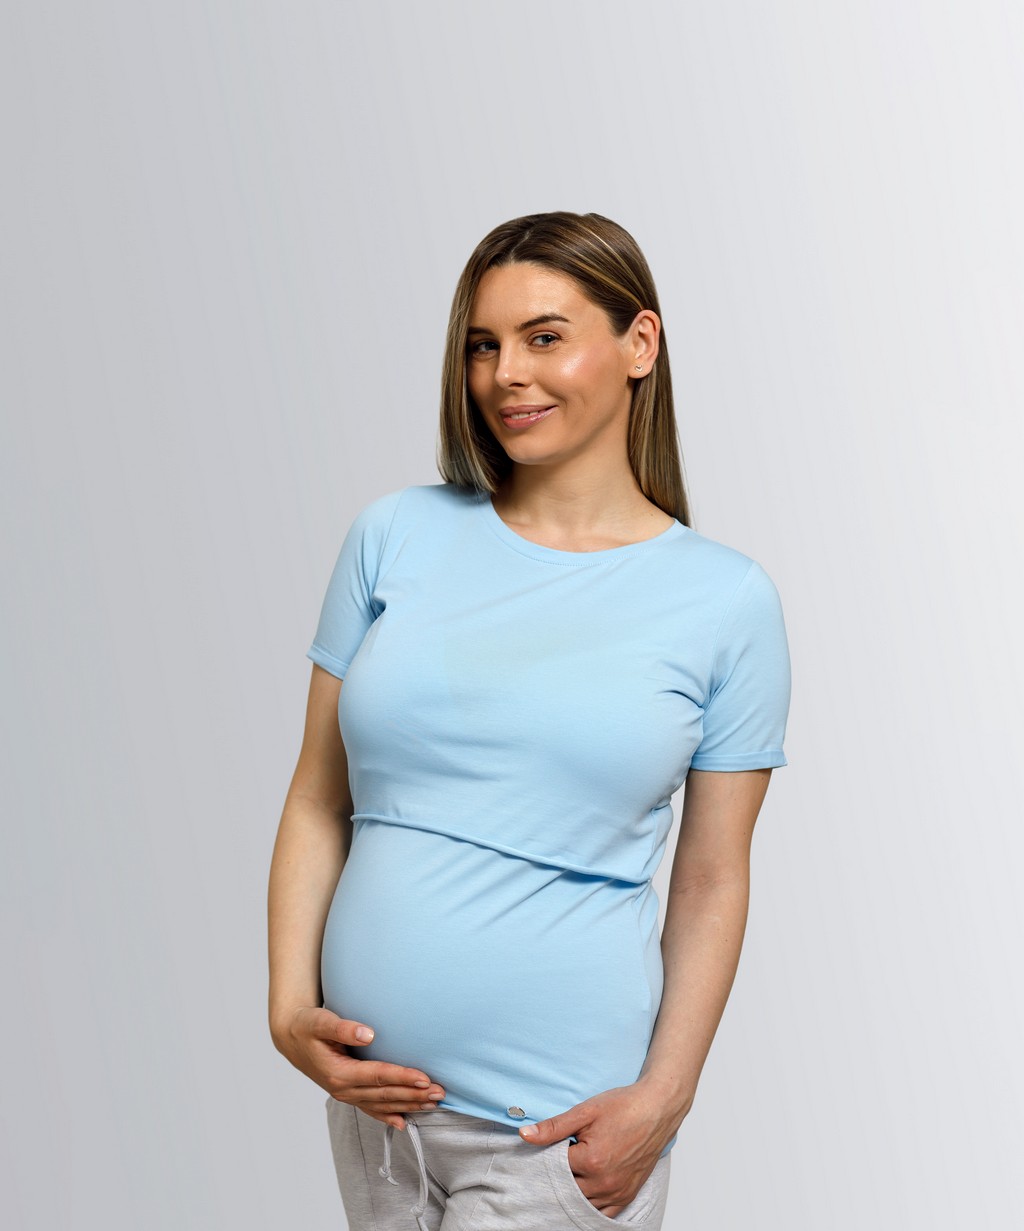 Футболка для беременных женская Tibba Clothes T-011 голубая XL